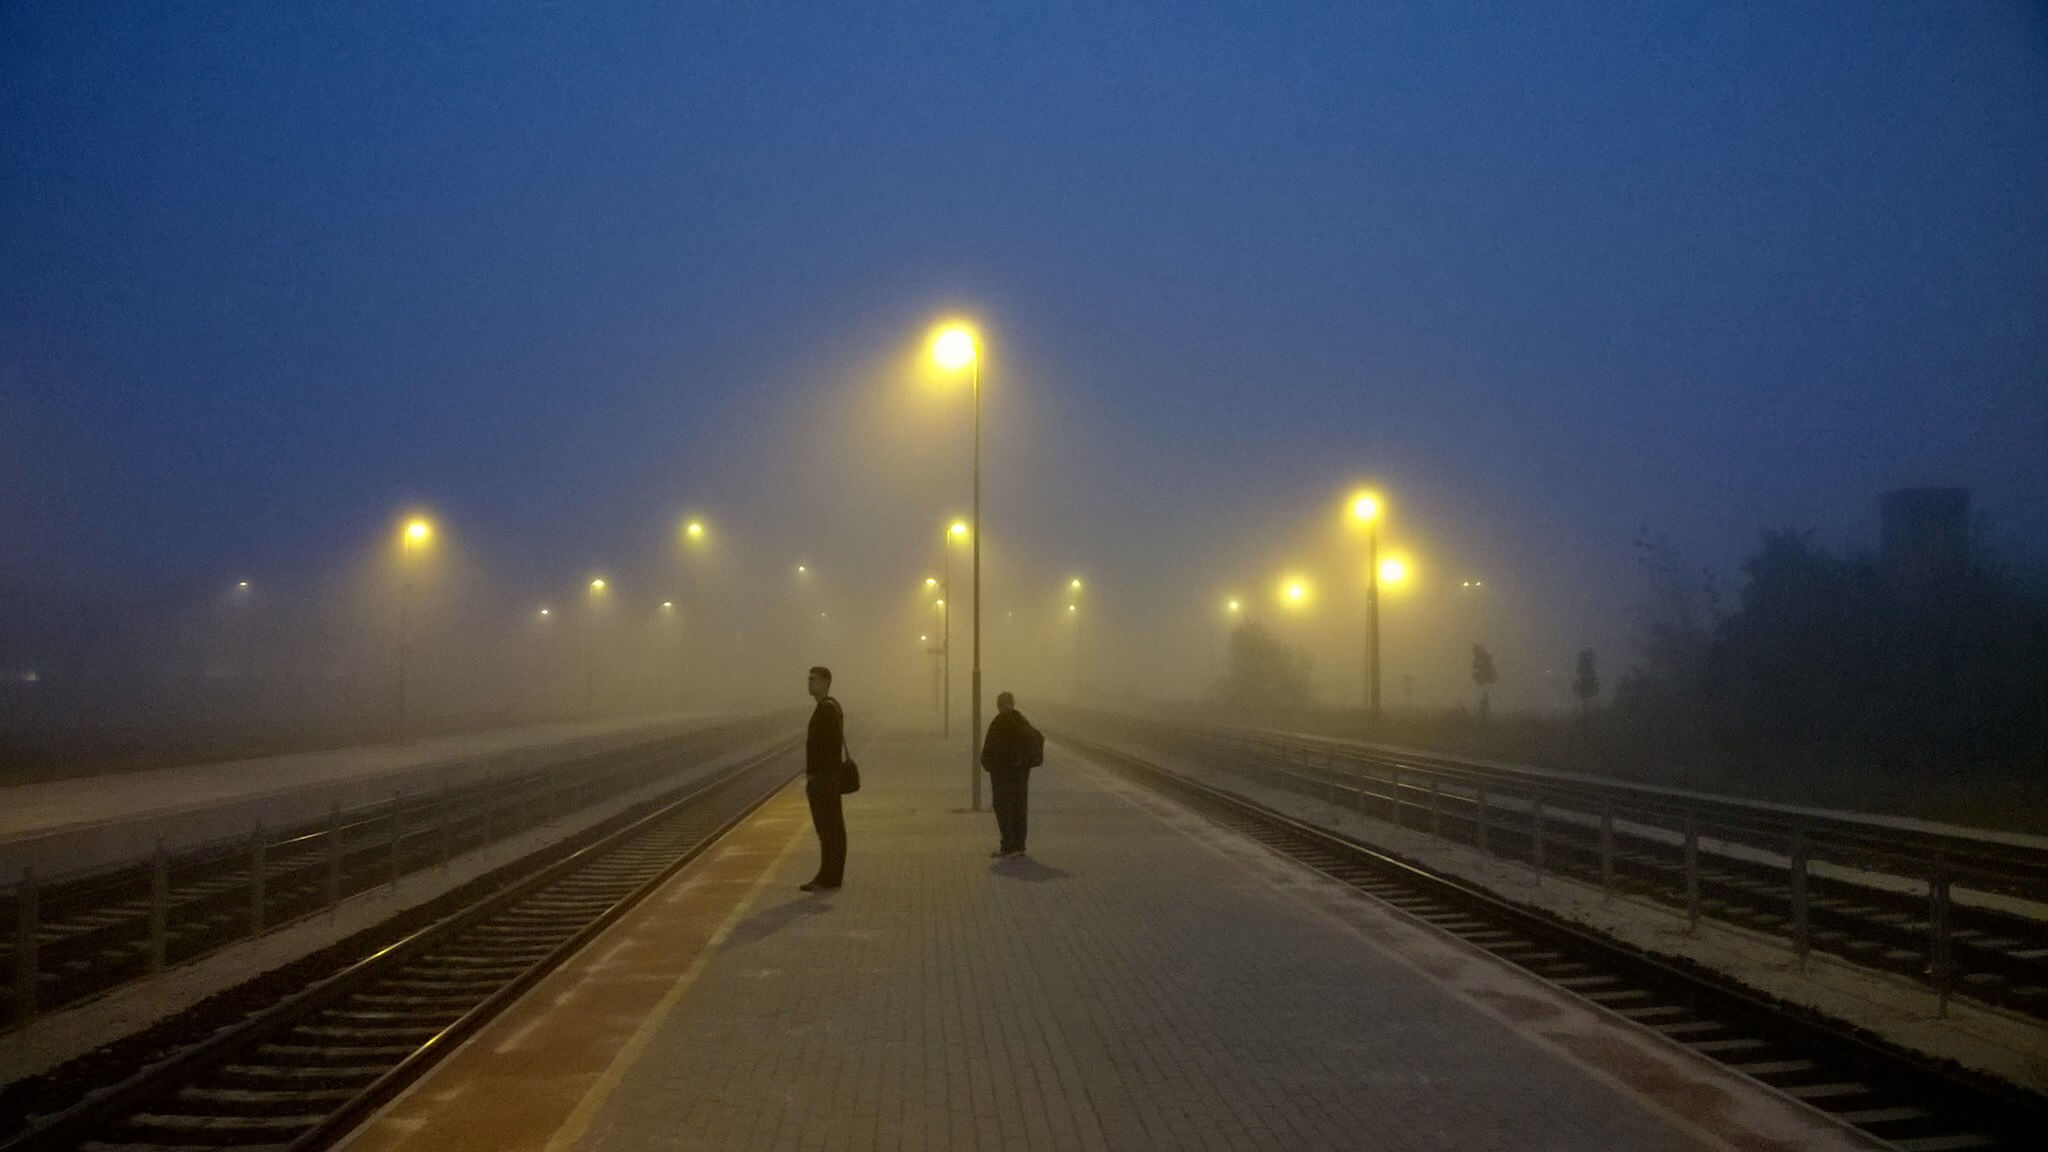 Reggeli köd